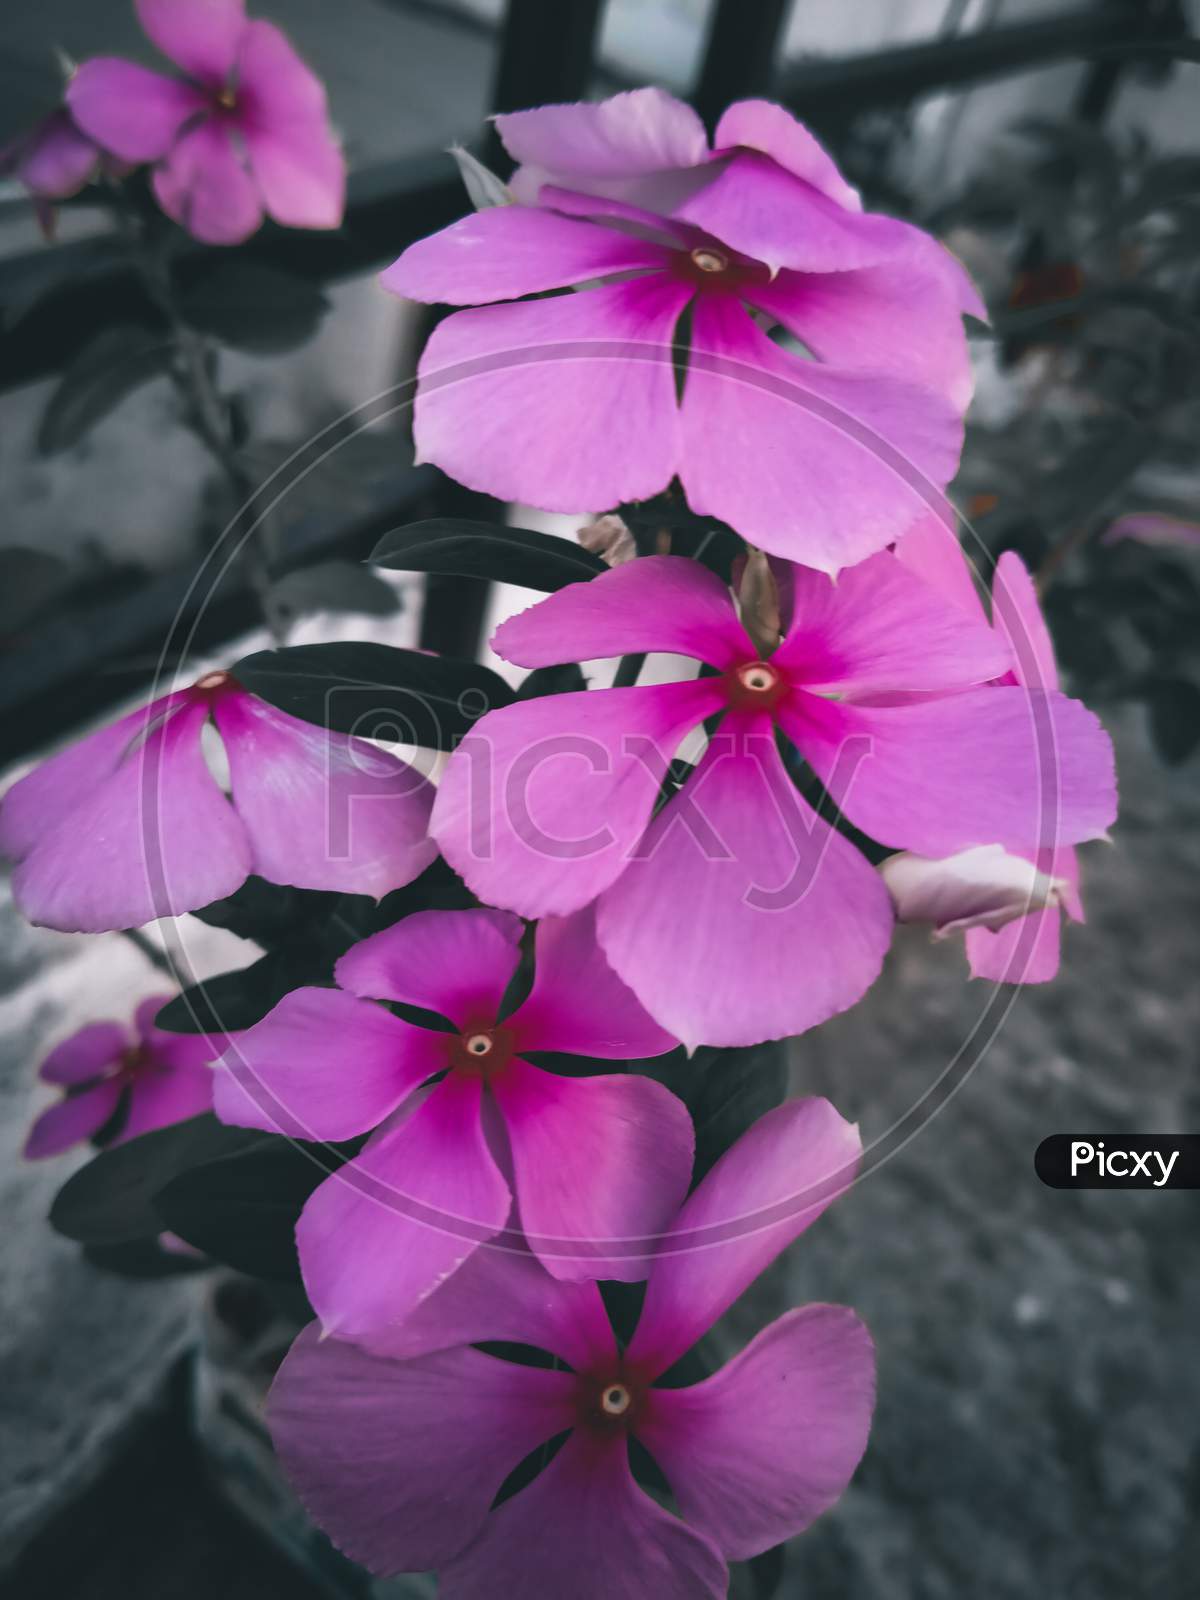 Flowers of a geranium.